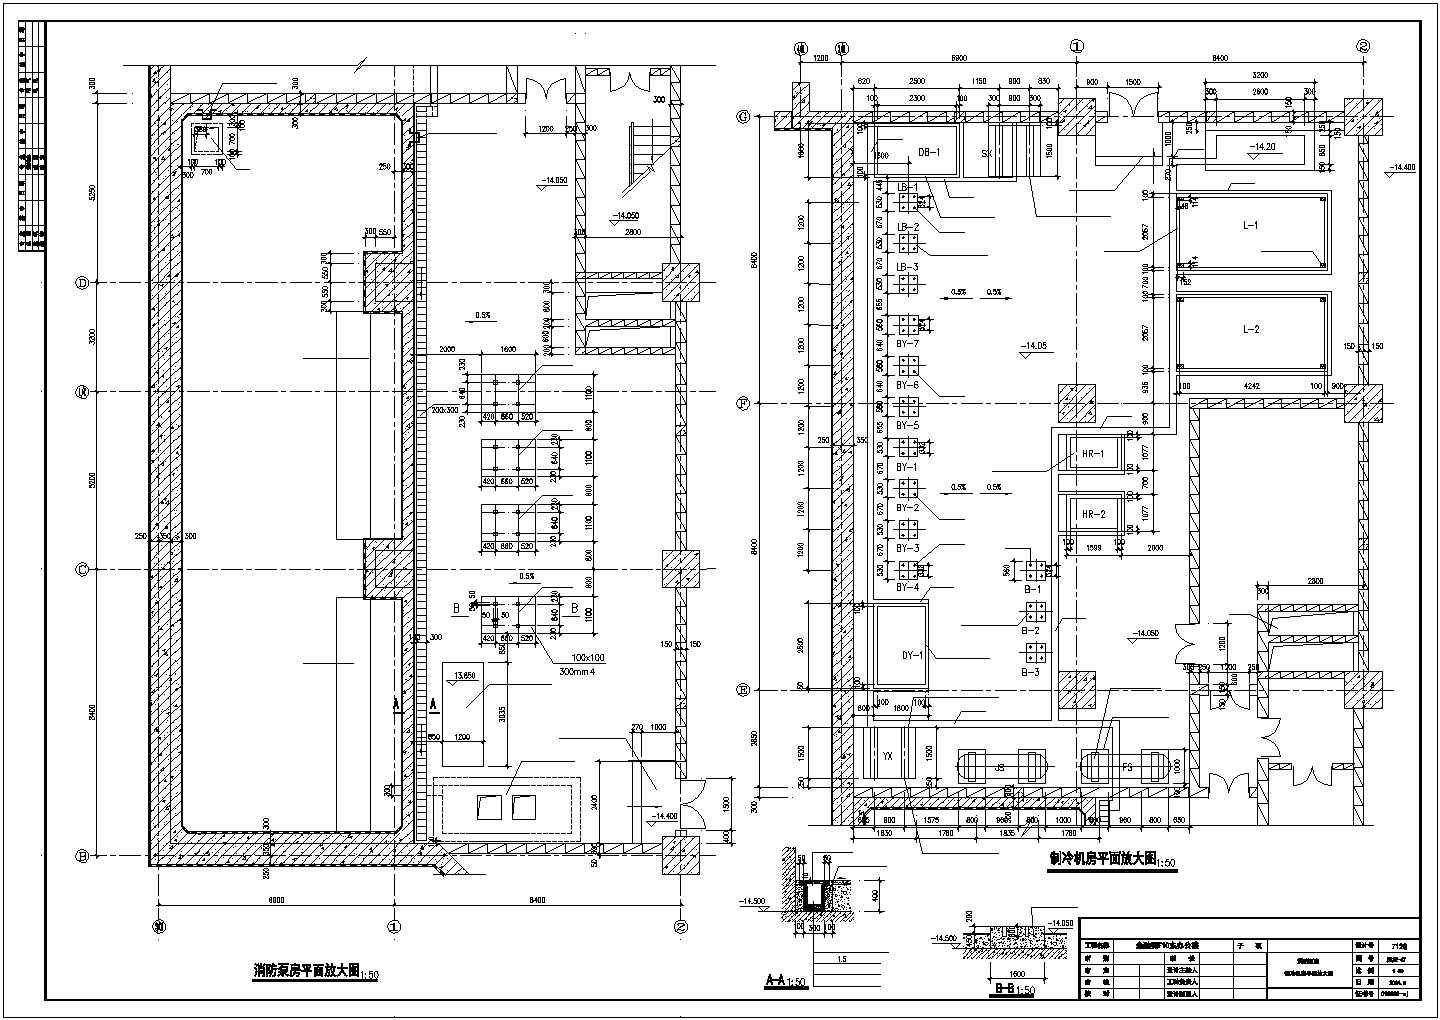 消防泵制冷机房平面图(F10建筑施工图)